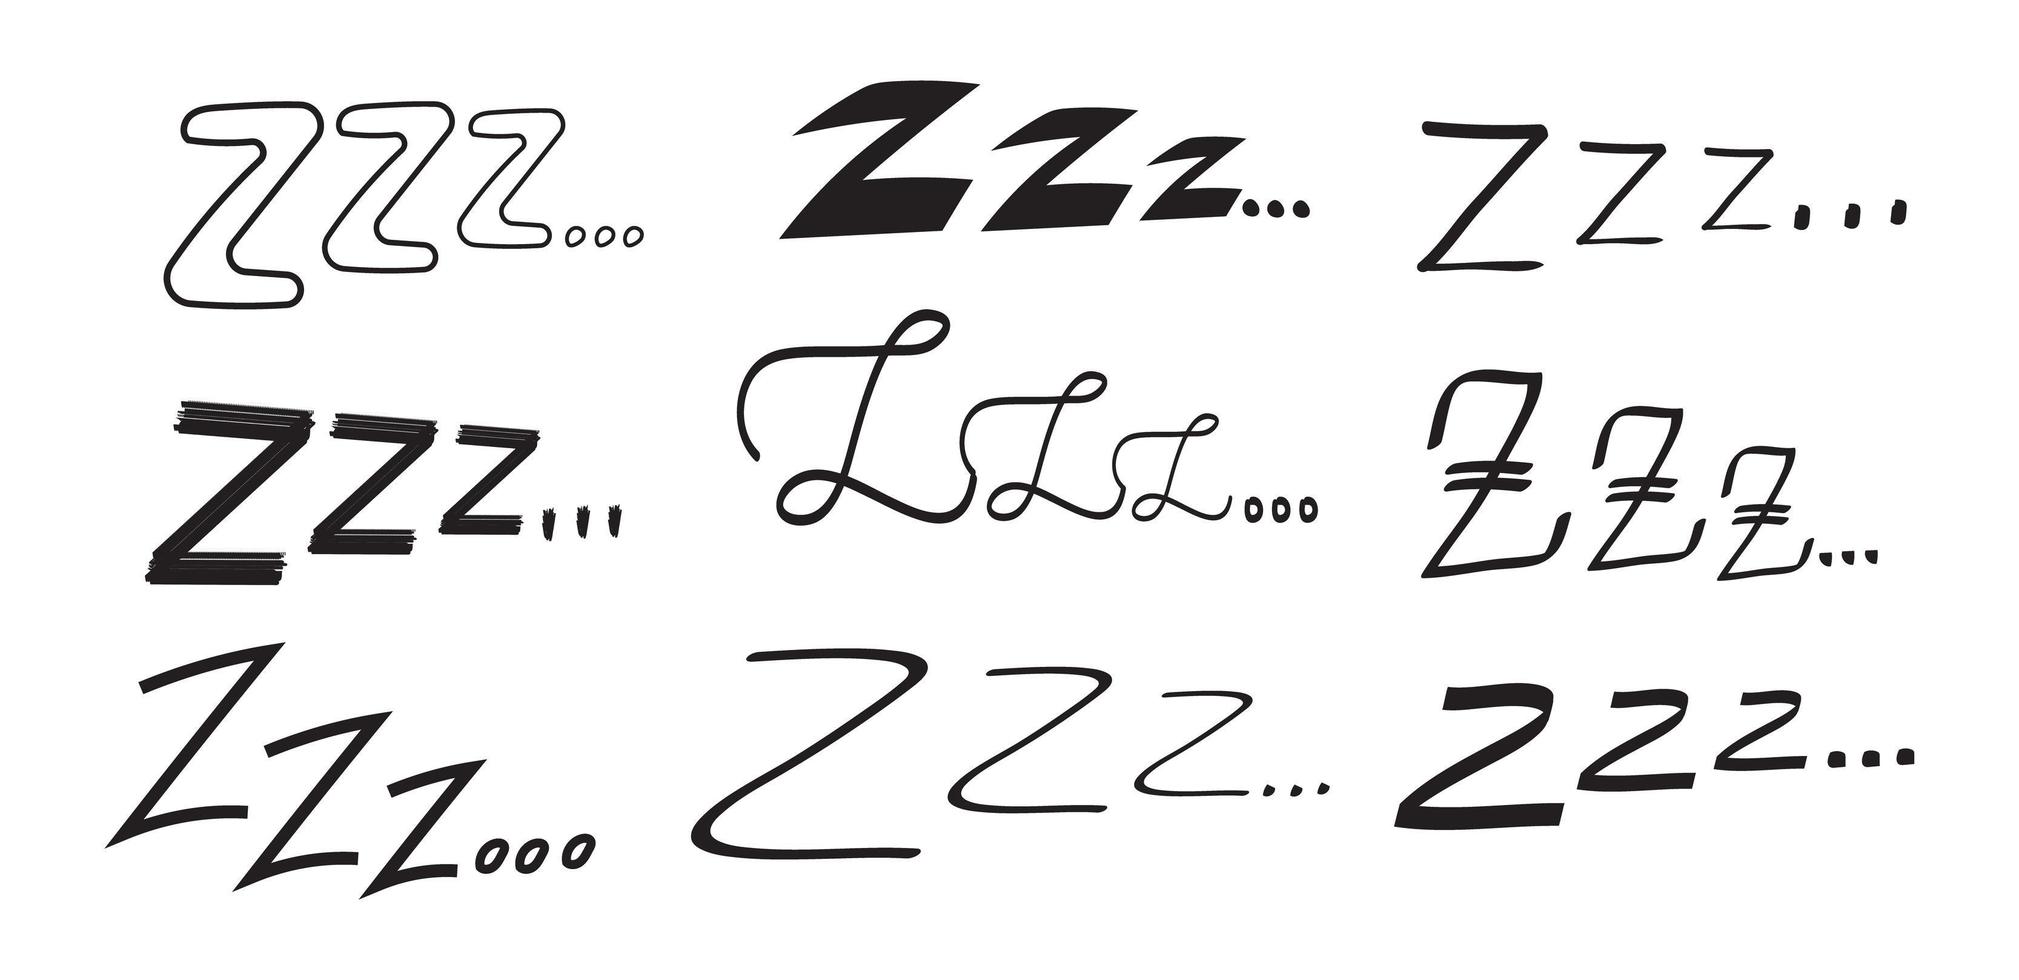 Schlaf-zzzz-Vektorsatz in handgezeichnetem Doodle-Set. Schlaflosigkeitssymbol im Skizzenstil. Doodle schläfriges Symbol vektor